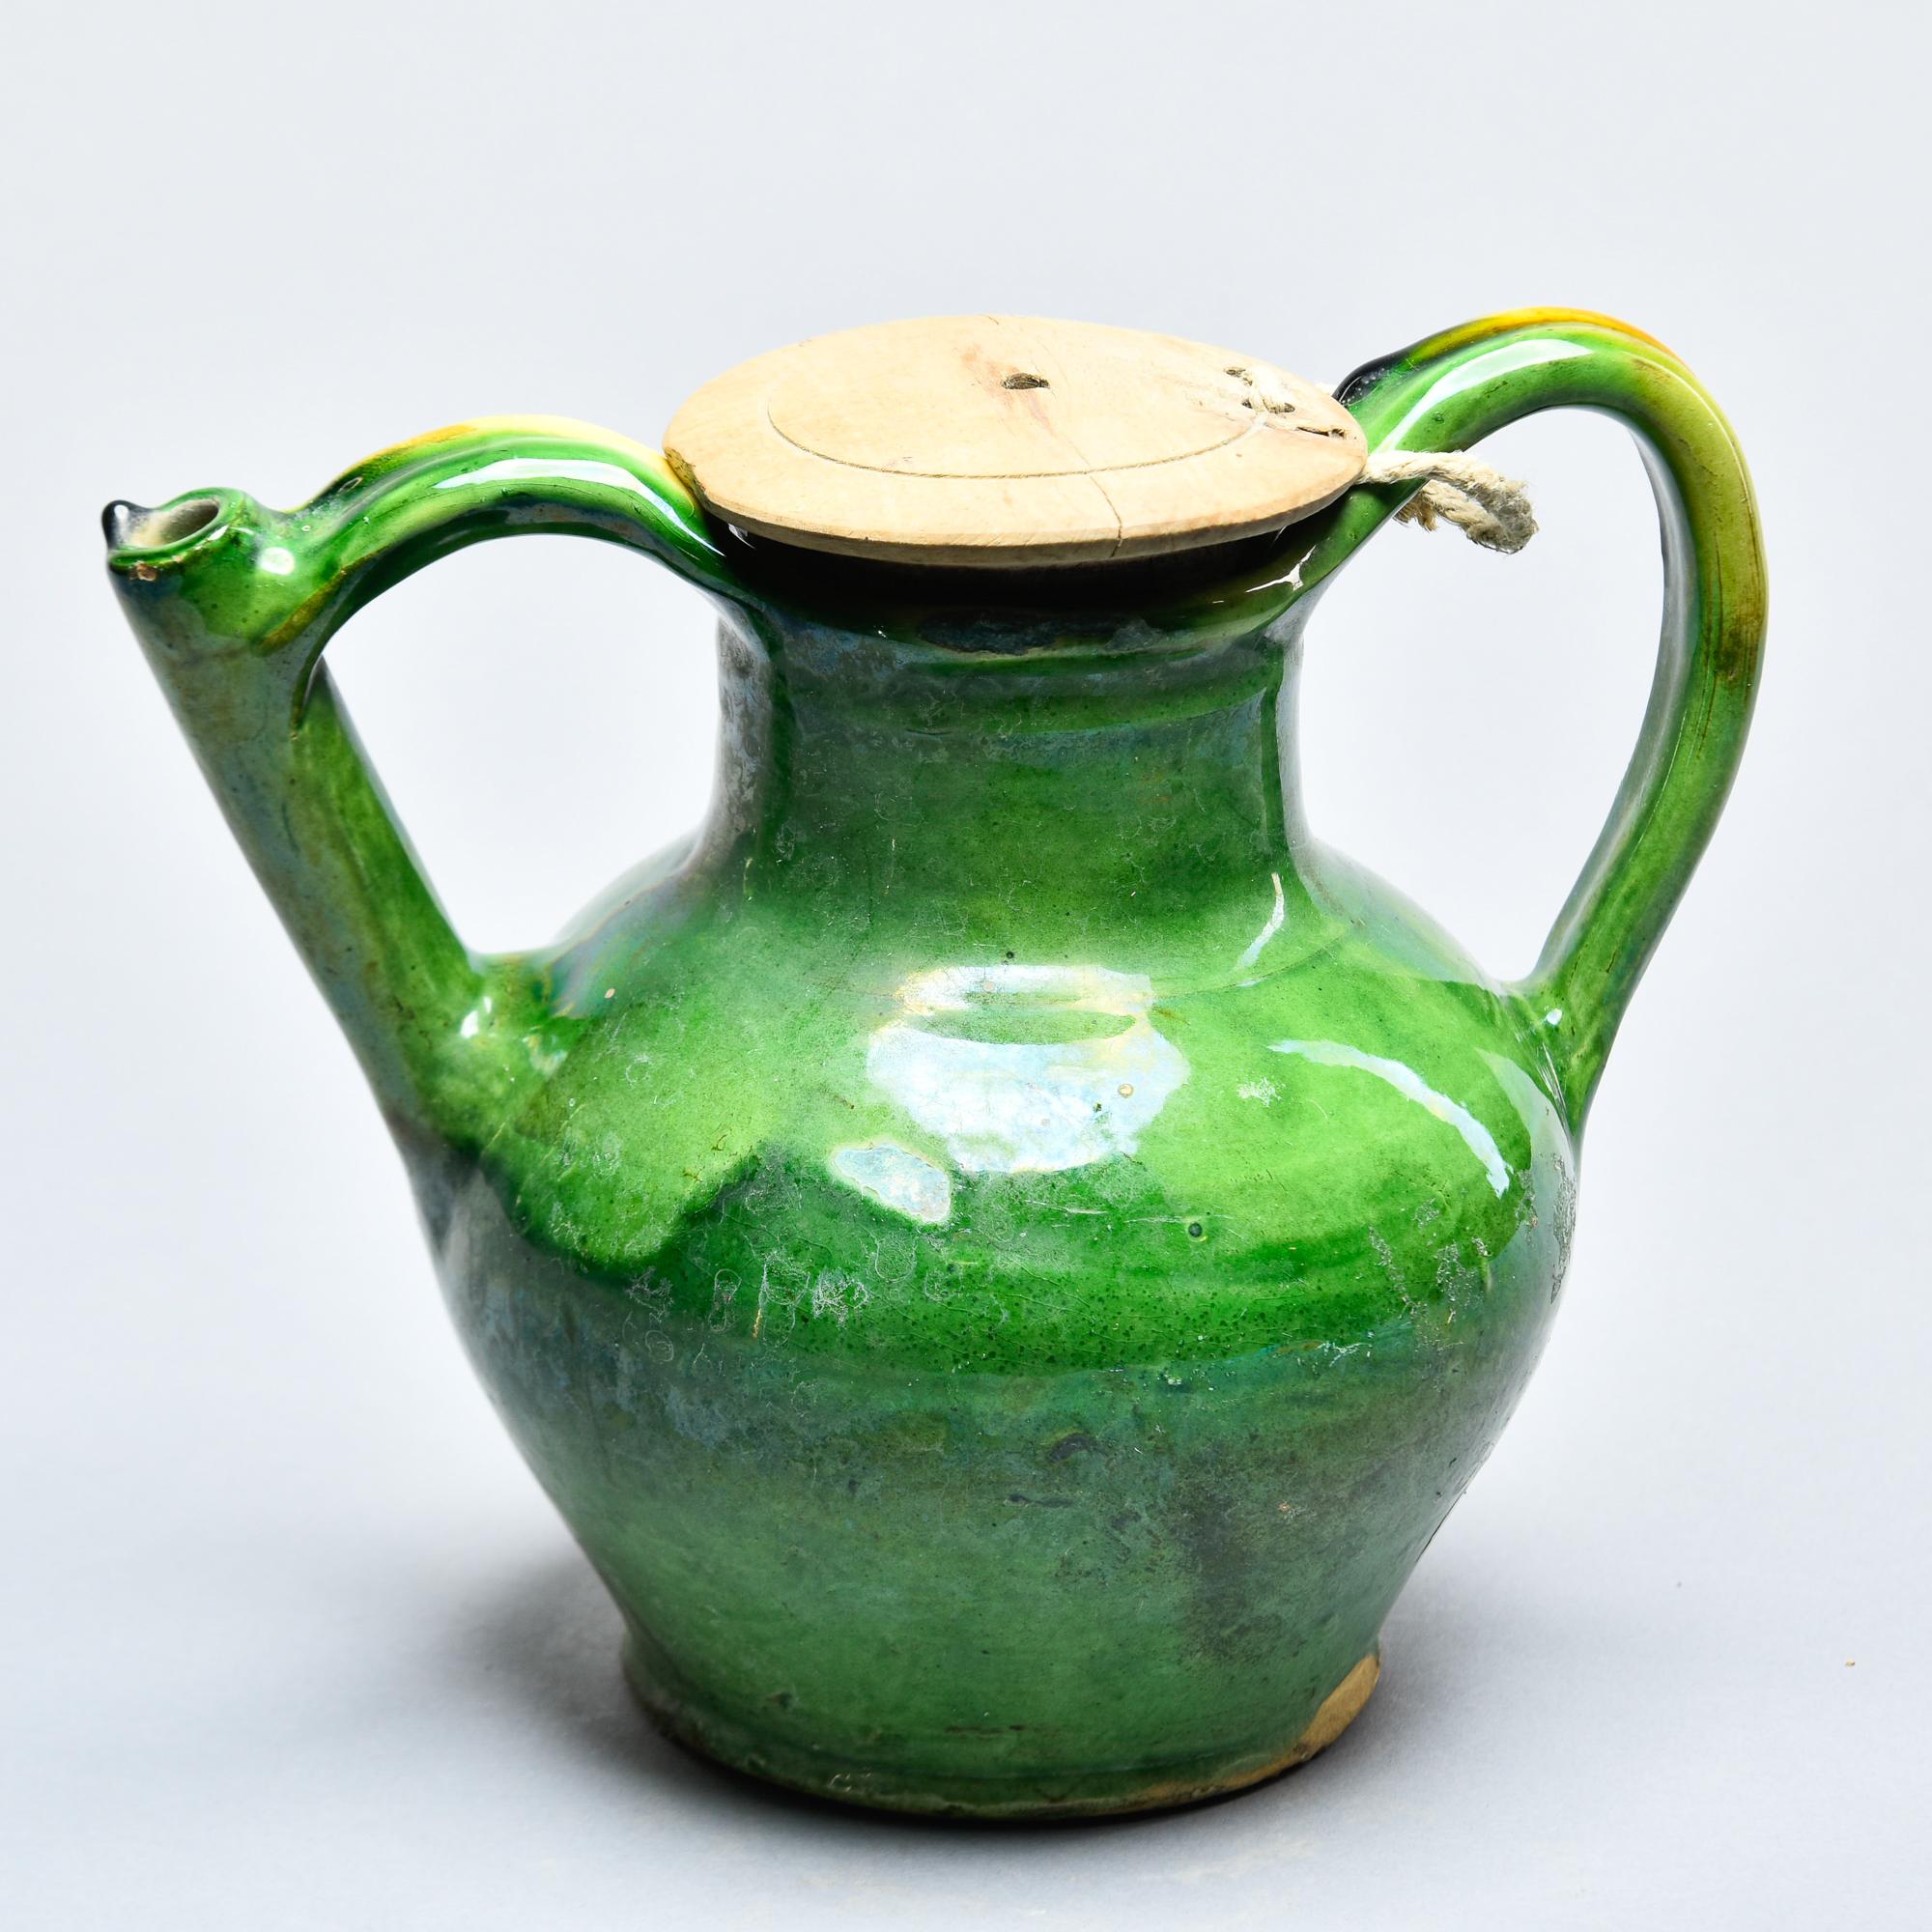 Diese grün glasierte Keramikkanne wurde in Frankreich gefunden und stammt aus der Zeit um 1910. Klassische provinzielle Amphorenform, bei der einer der Griffe eine funktionale Ausgieß- und Füllöffnung aufweist. Es ist sehr ungewöhnlich, diese Gefäße